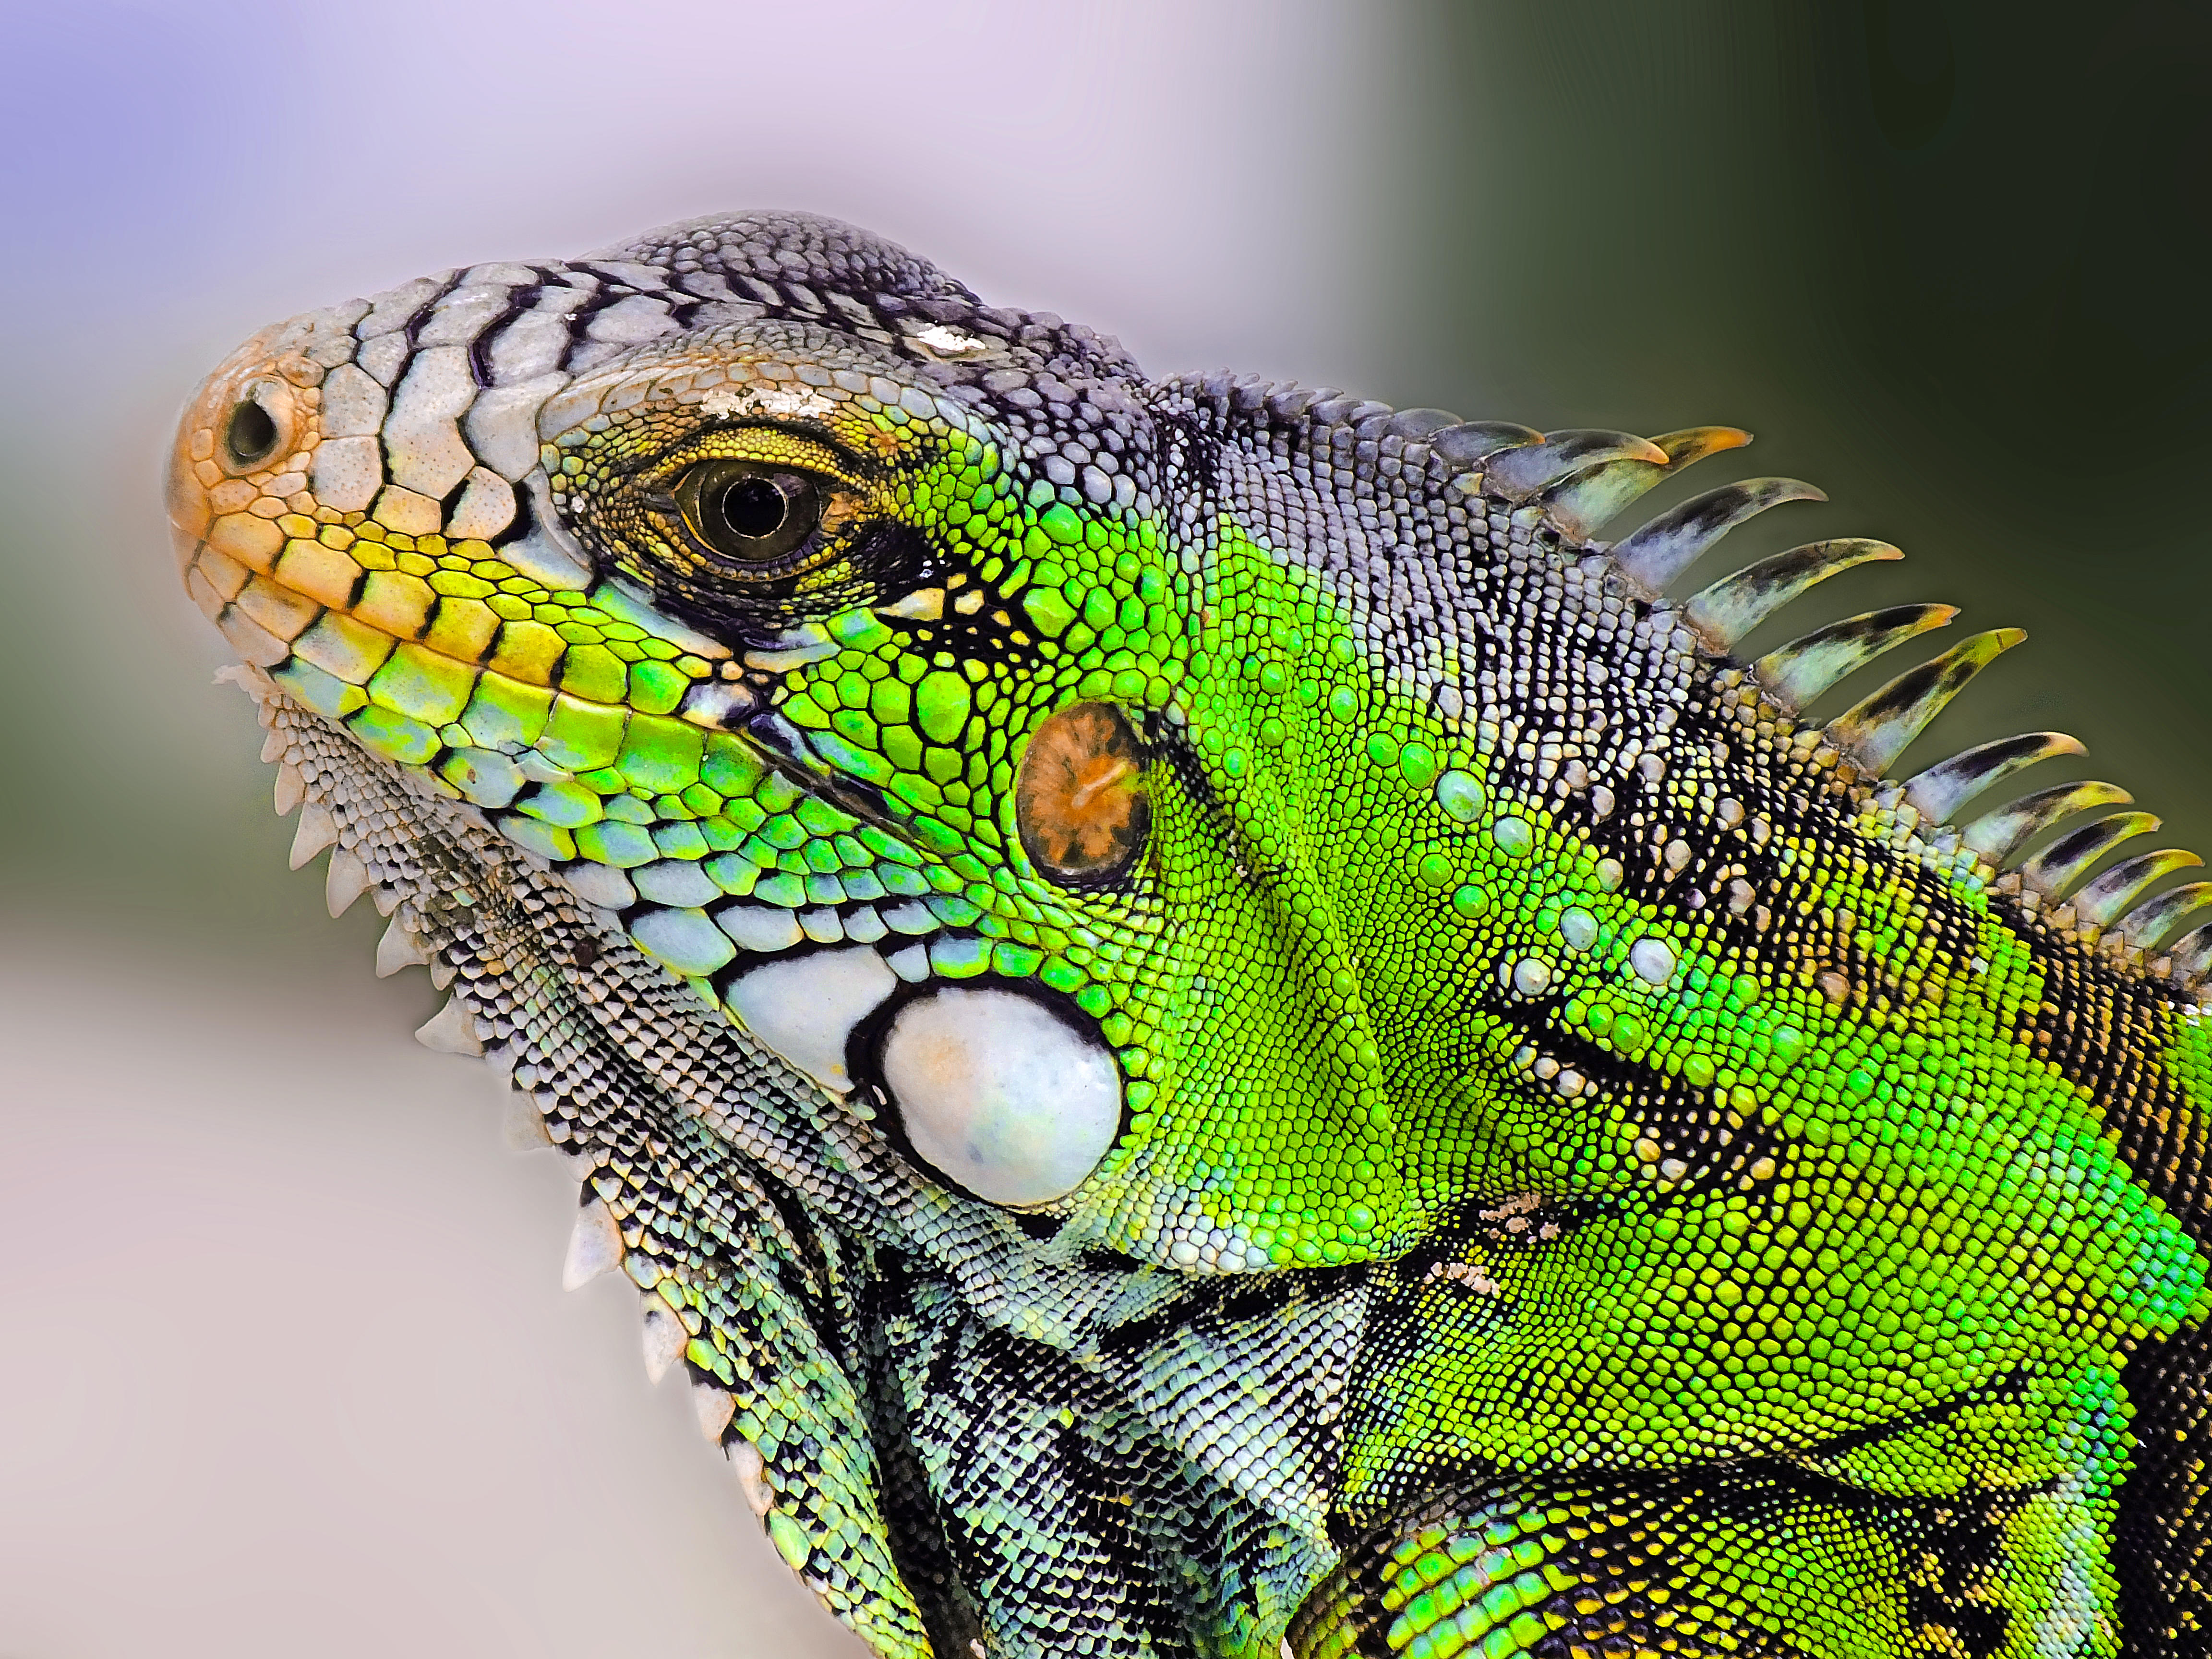 Фото бесплатно Iguana, Игуана, крупная растительноядная ящерица